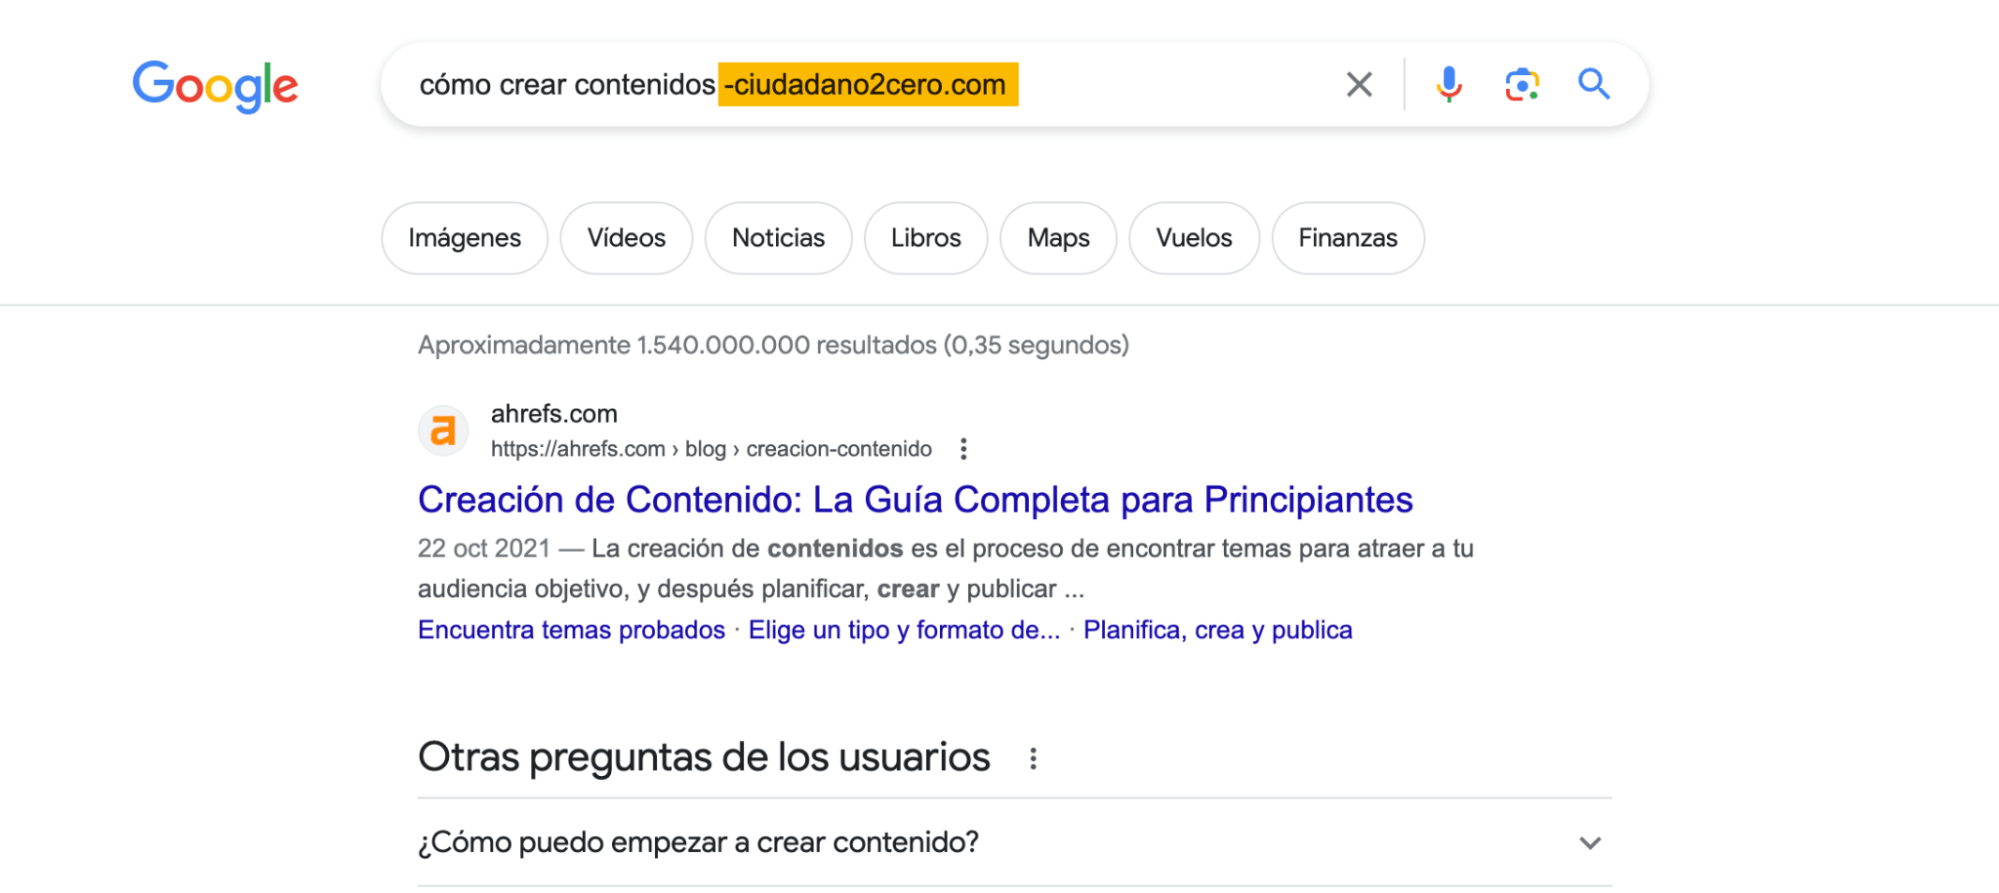 Resultado de la búsqueda en Google de "cómo crear contenidos -ciudadano2cero.com".